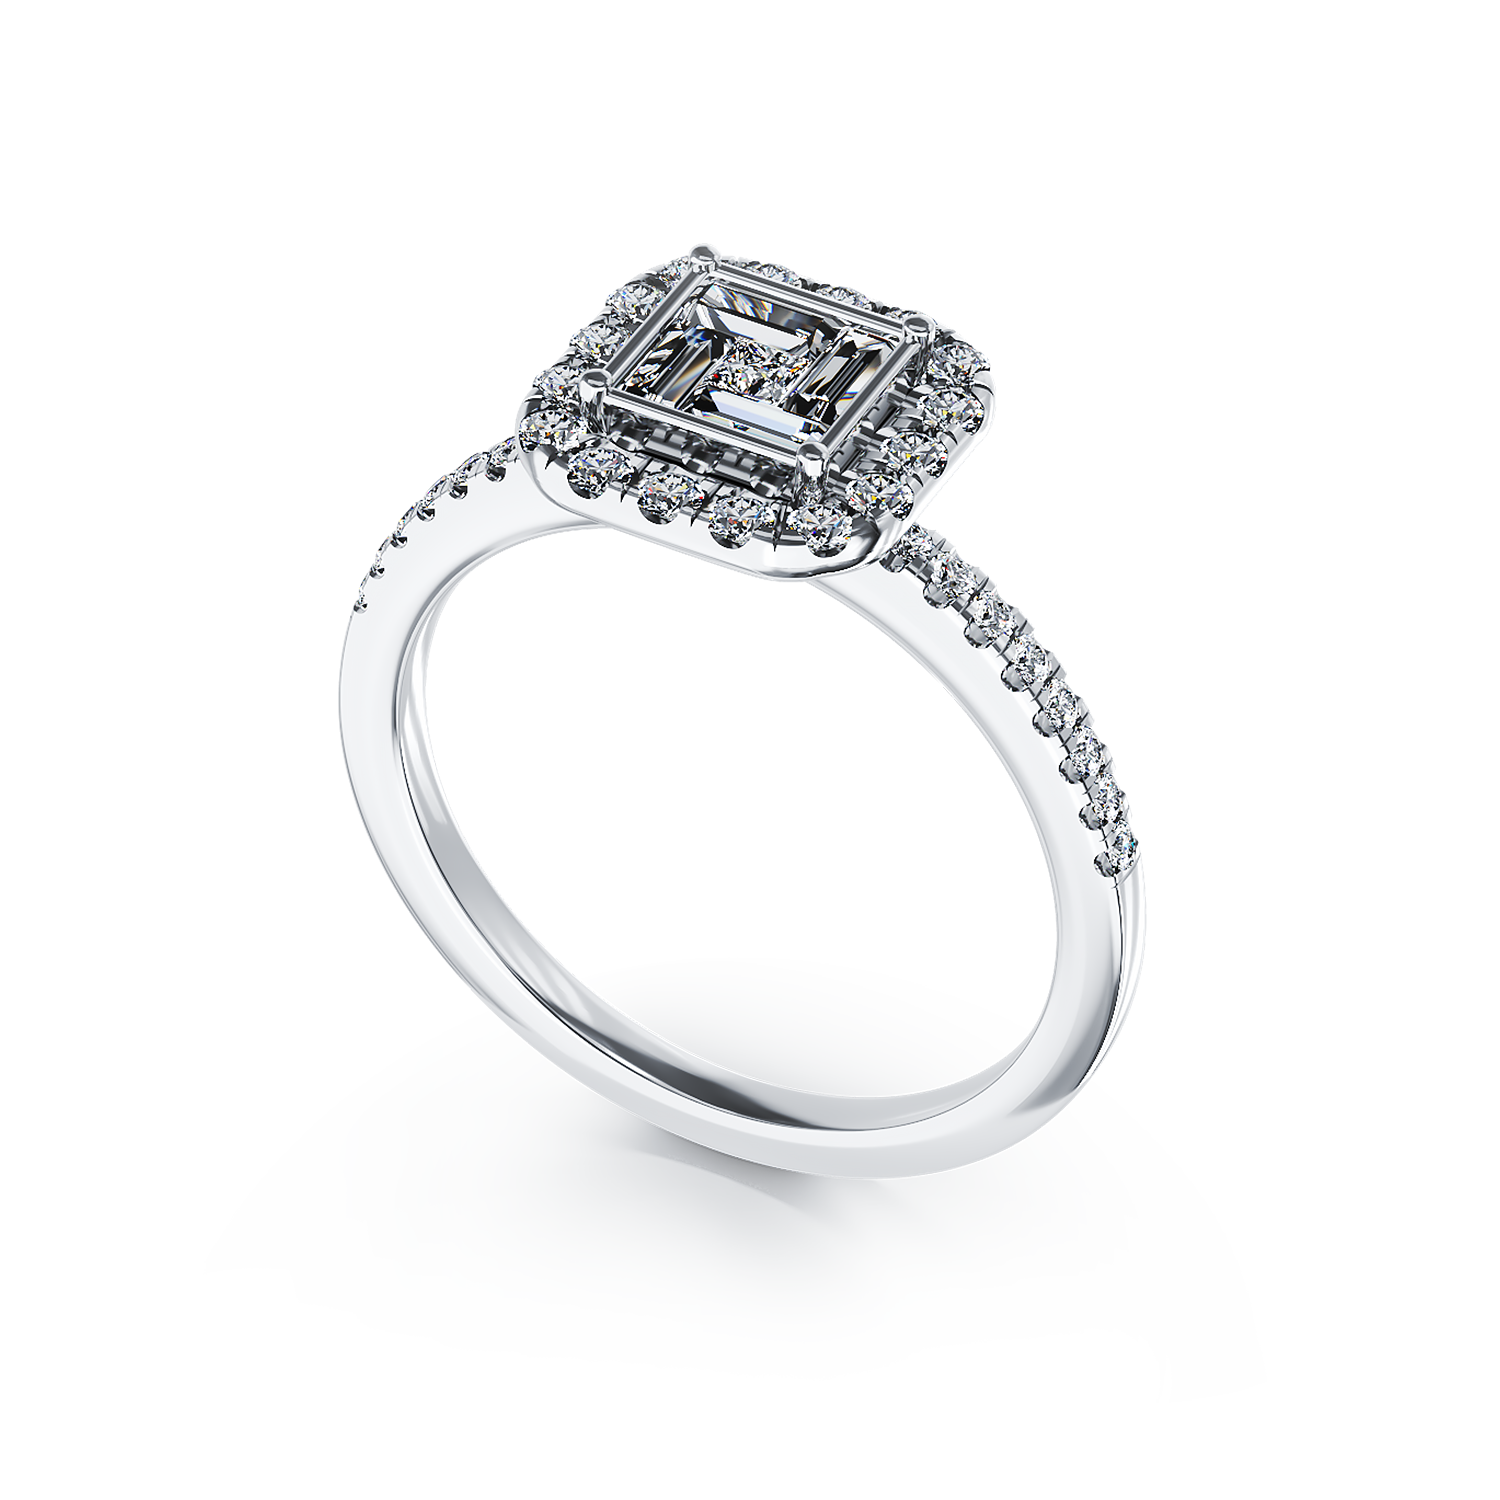 Poze Inel de logodna din aur alb de 18K cu diamante de 0.44ct